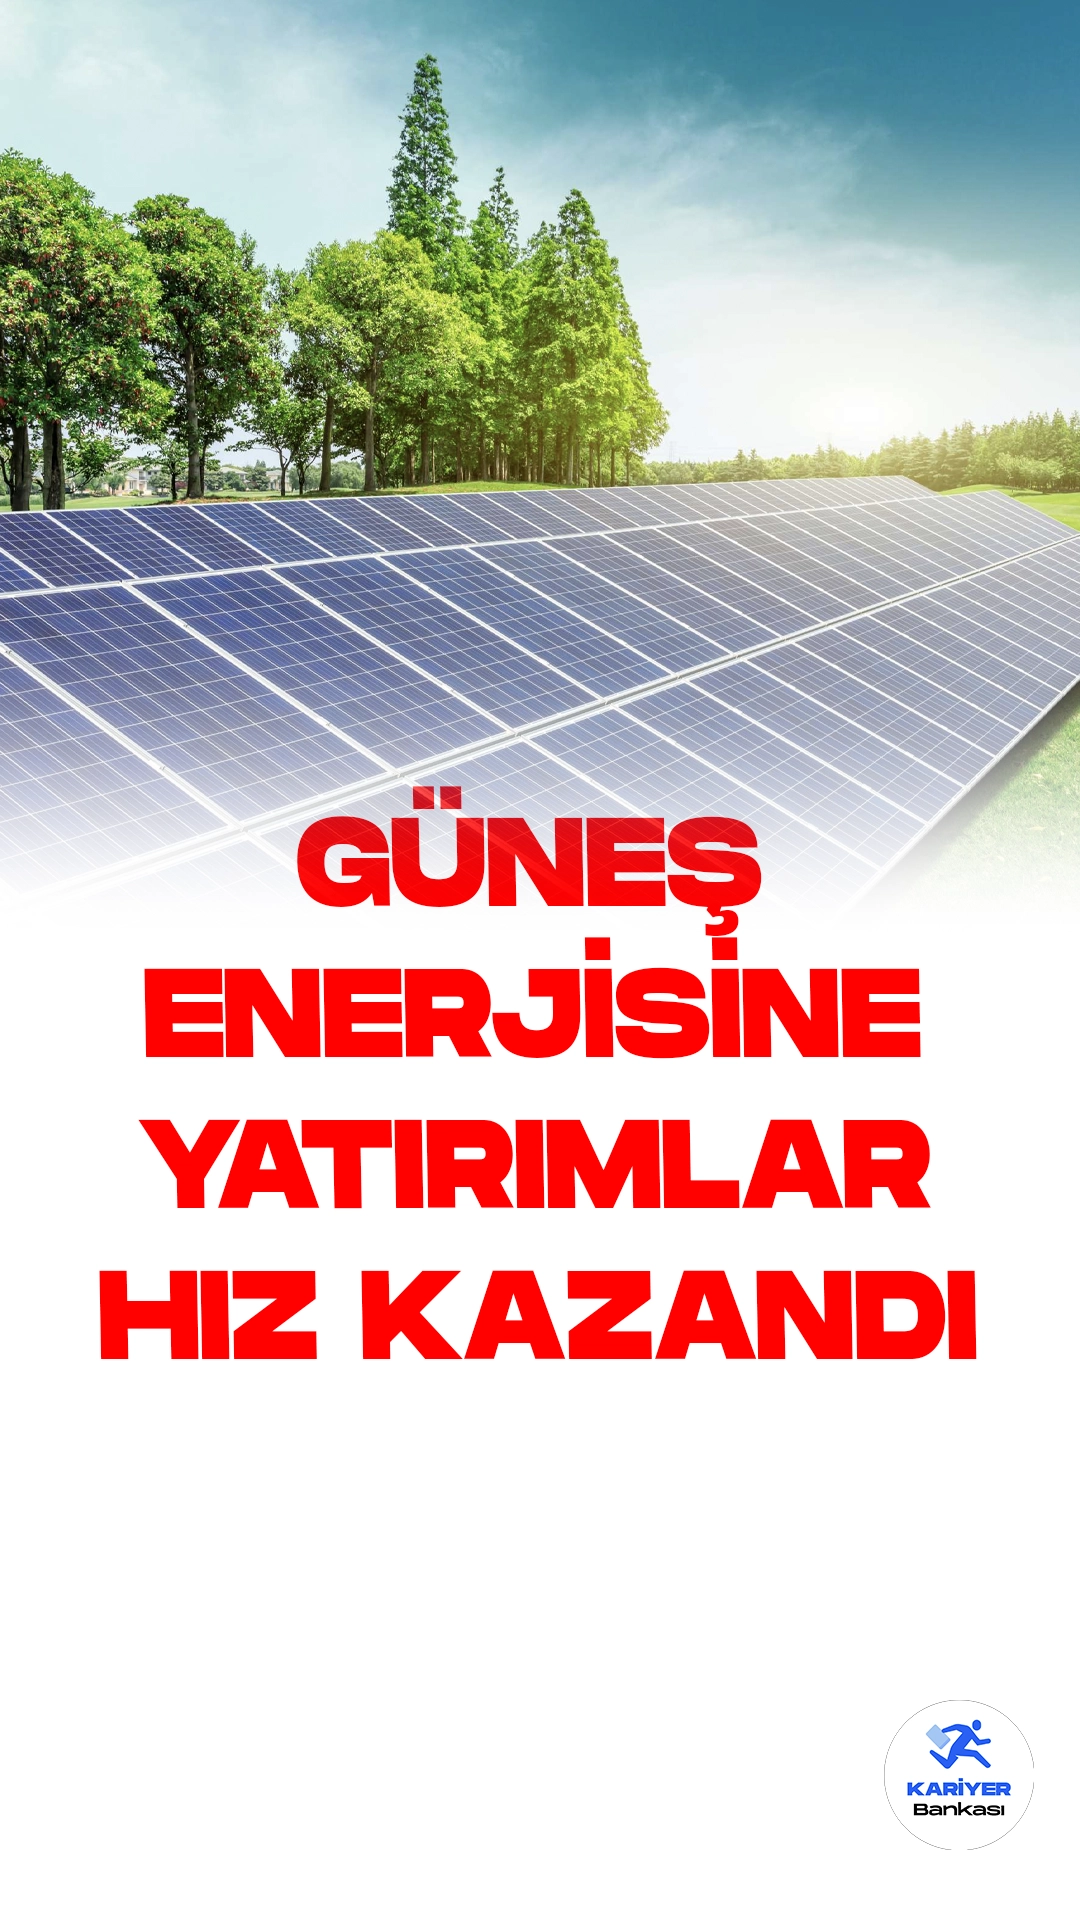 Güneş Enerjisine Yatırımlar EPDK Düzenlemesiyle Hız Kazandı: 10 Milyar Dolarlık Yatırım Gerçekleşti.Geçtiğimiz yıl ağustos ayında Enerji Piyasası Düzenleme Kurumu (EPDK) tarafından yapılan Lisanssız Elektrik Üretimi Yönetmeliği'ndeki değişiklikler, güneş enerjisi sektöründe büyük bir yatırım atılımını beraberinde getirdi. Bu düzenlemeler sayesinde bir yıl içinde 10 milyar dolarlık yatırım gerçekleştirildi. Ayrıca, 12 ay gibi kısa bir süre içinde 12 bin megavatın üzerinde kurulu güce sahip 14 bin üretim tesisi için lisanssız kapasite tahsisi yapıldı.